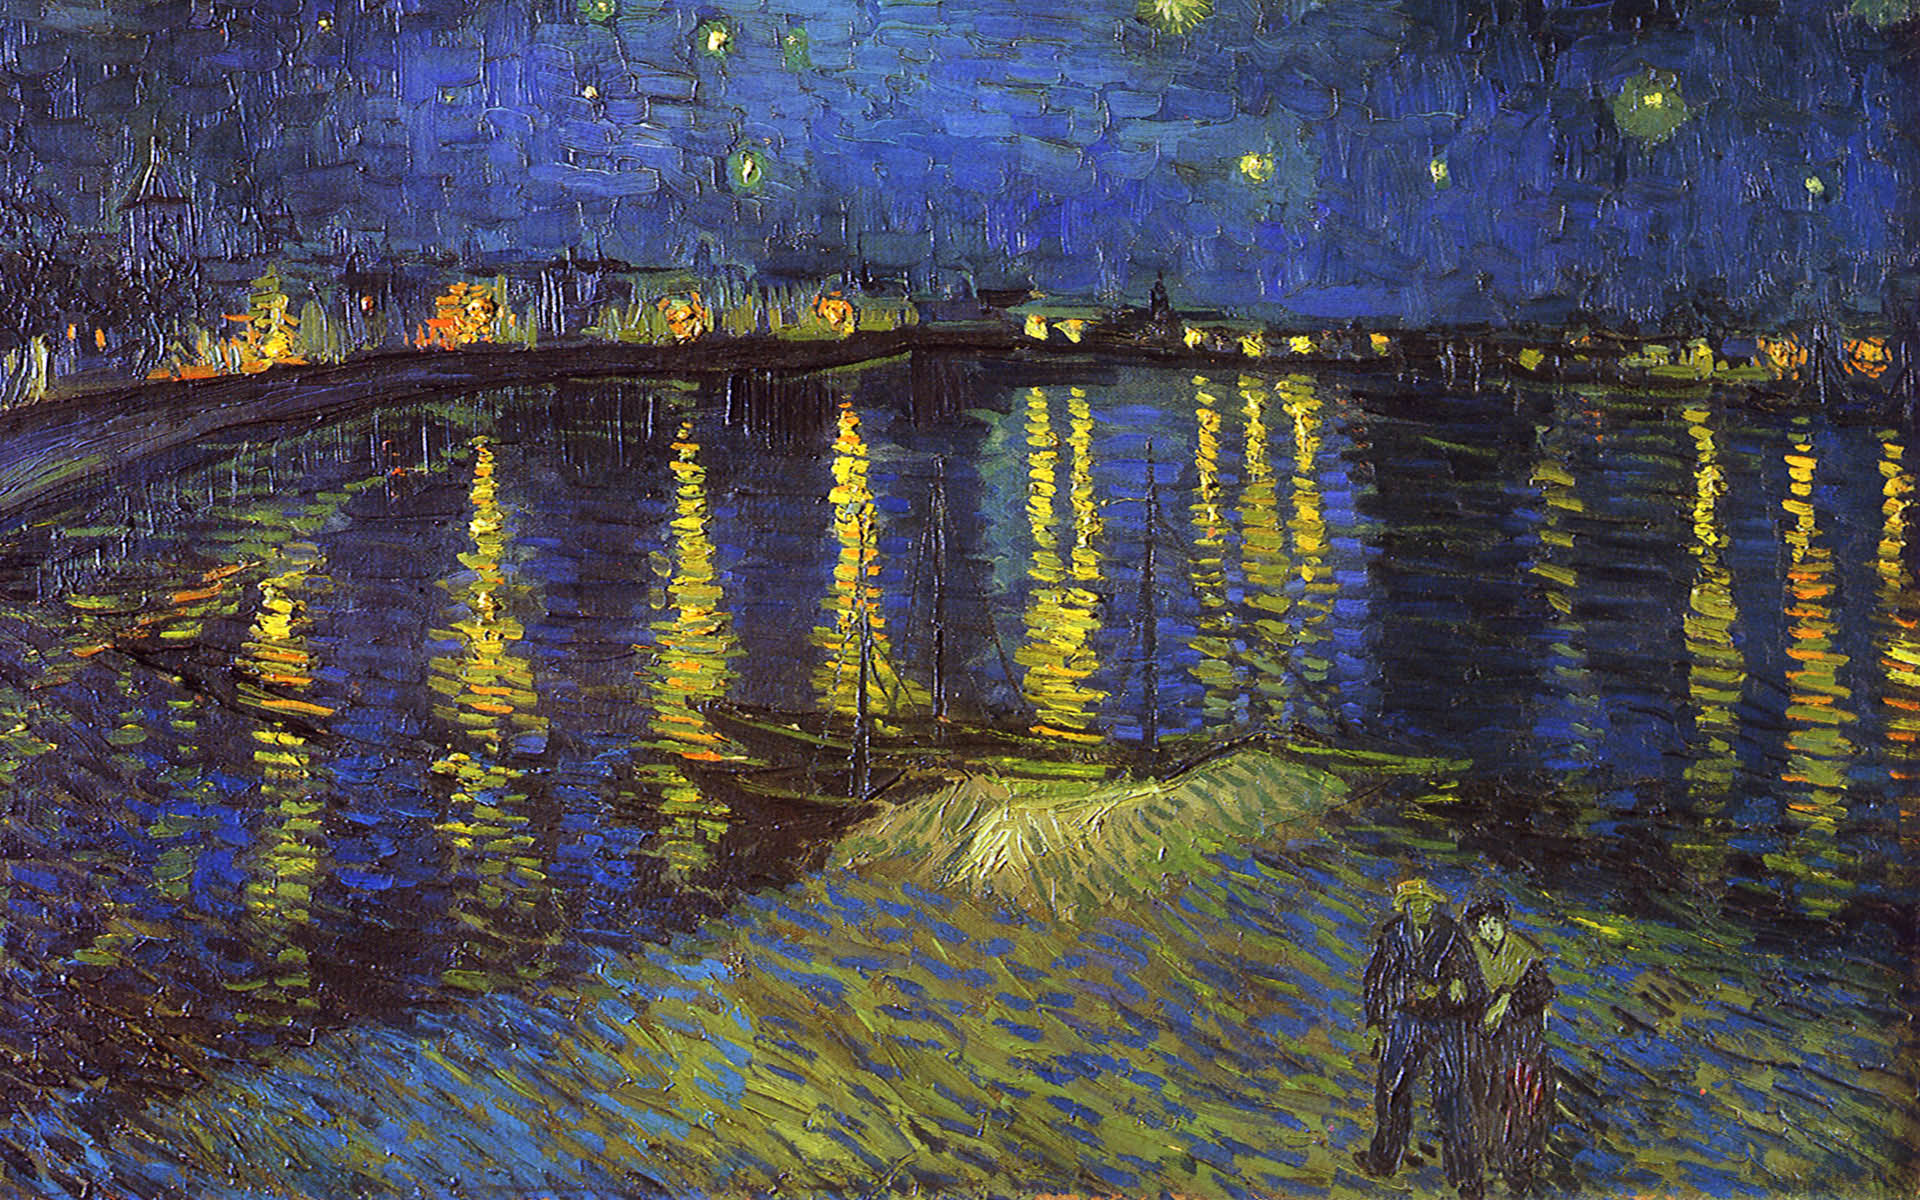 Bạn đang tìm kiếm hình nền desktop độc đáo và nghệ thuật? Đừng bỏ qua bức tranh nổi tiếng của Van Gogh! Bạn sẽ có thế giới nghệ thuật đầy màu sắc trên màn hình của mình với bức tranh Van Gogh.